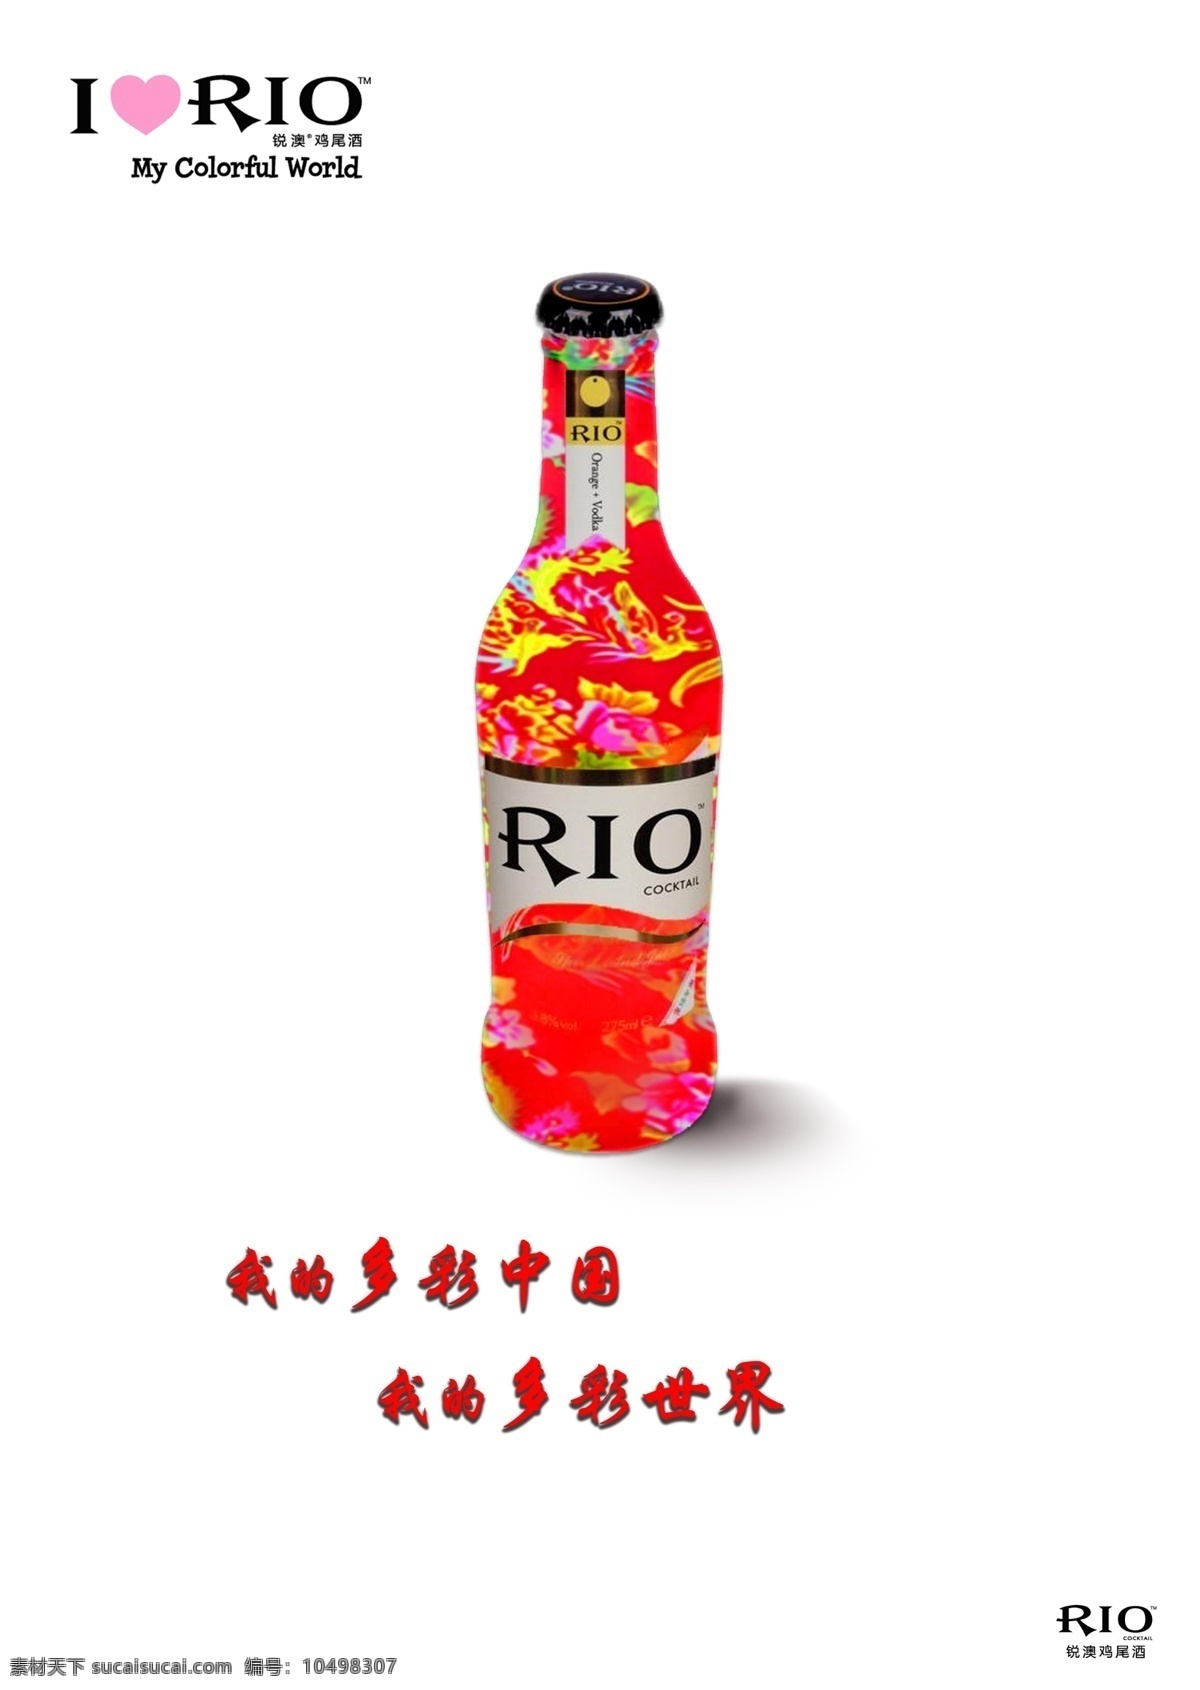 rio 鸡尾酒 海报 创意海报 rio鸡尾酒 宣传海报 宣传 中国文化 rio海报 校园